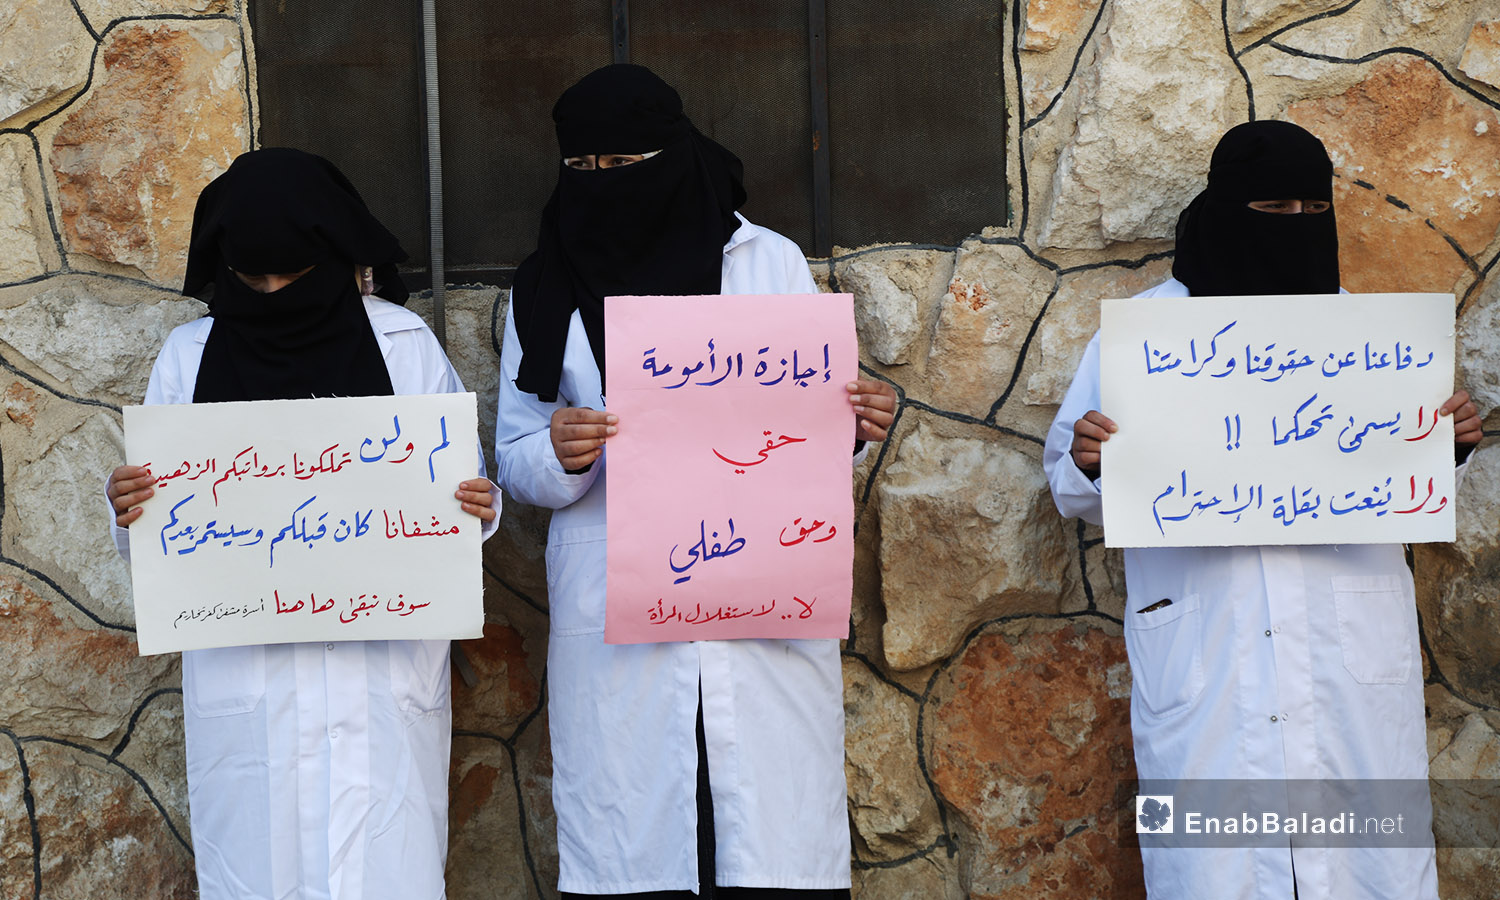 نساء من الكادر الطبي يحملن لافتات يطالبن بحقوقهن في كفر تخريم بريف أدلب - 11 تشرين الأول 2020 (عنب بلدي /يوسف غريبي )